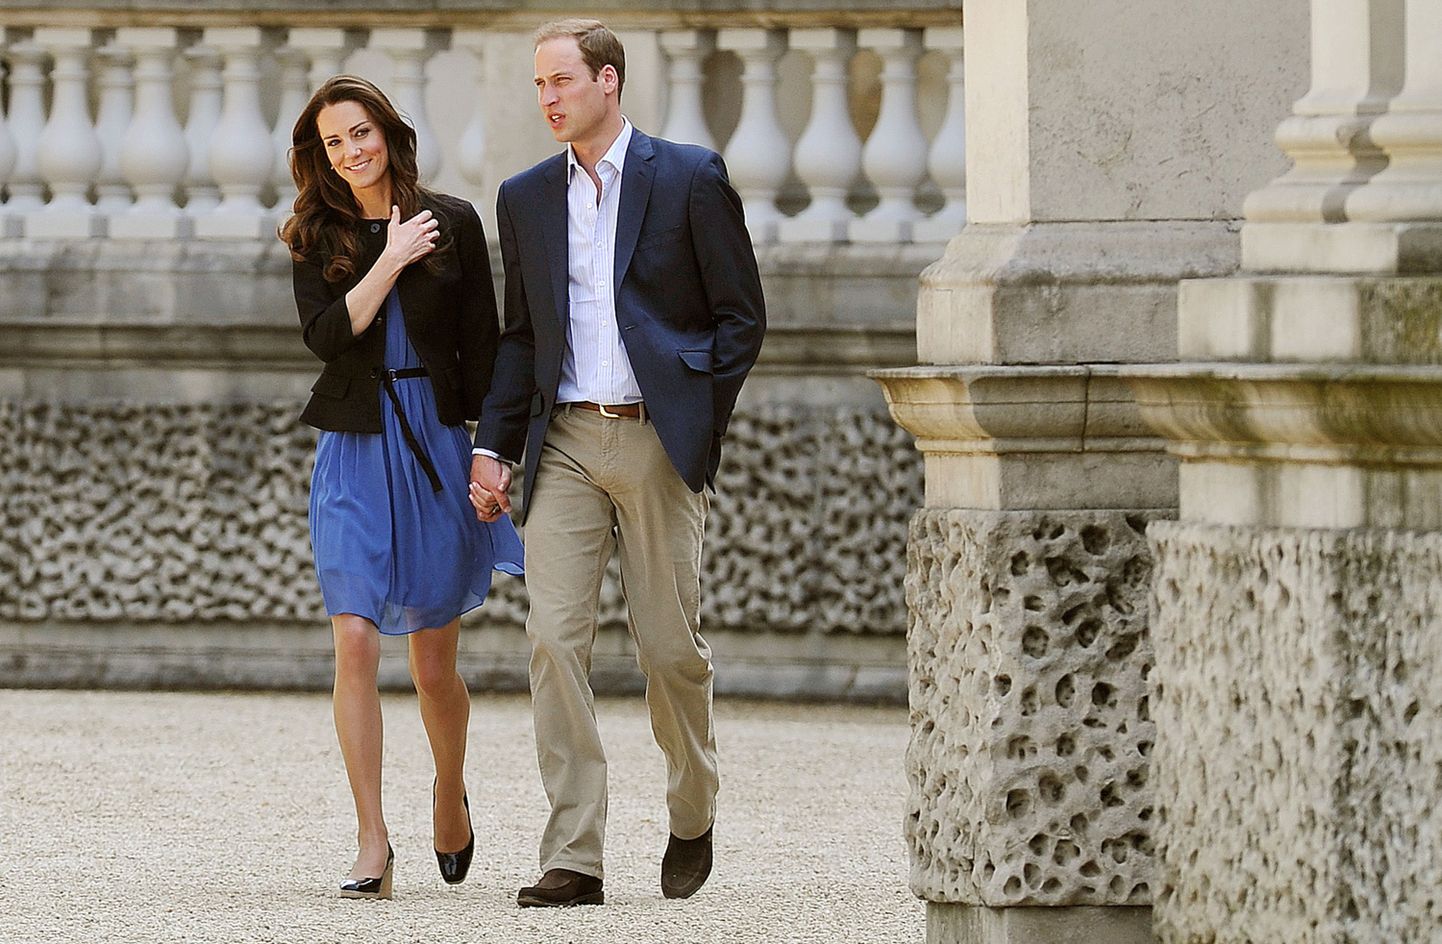 Prints William ja Catherine lahkuvad Buckinghami paleest täna hommikul.